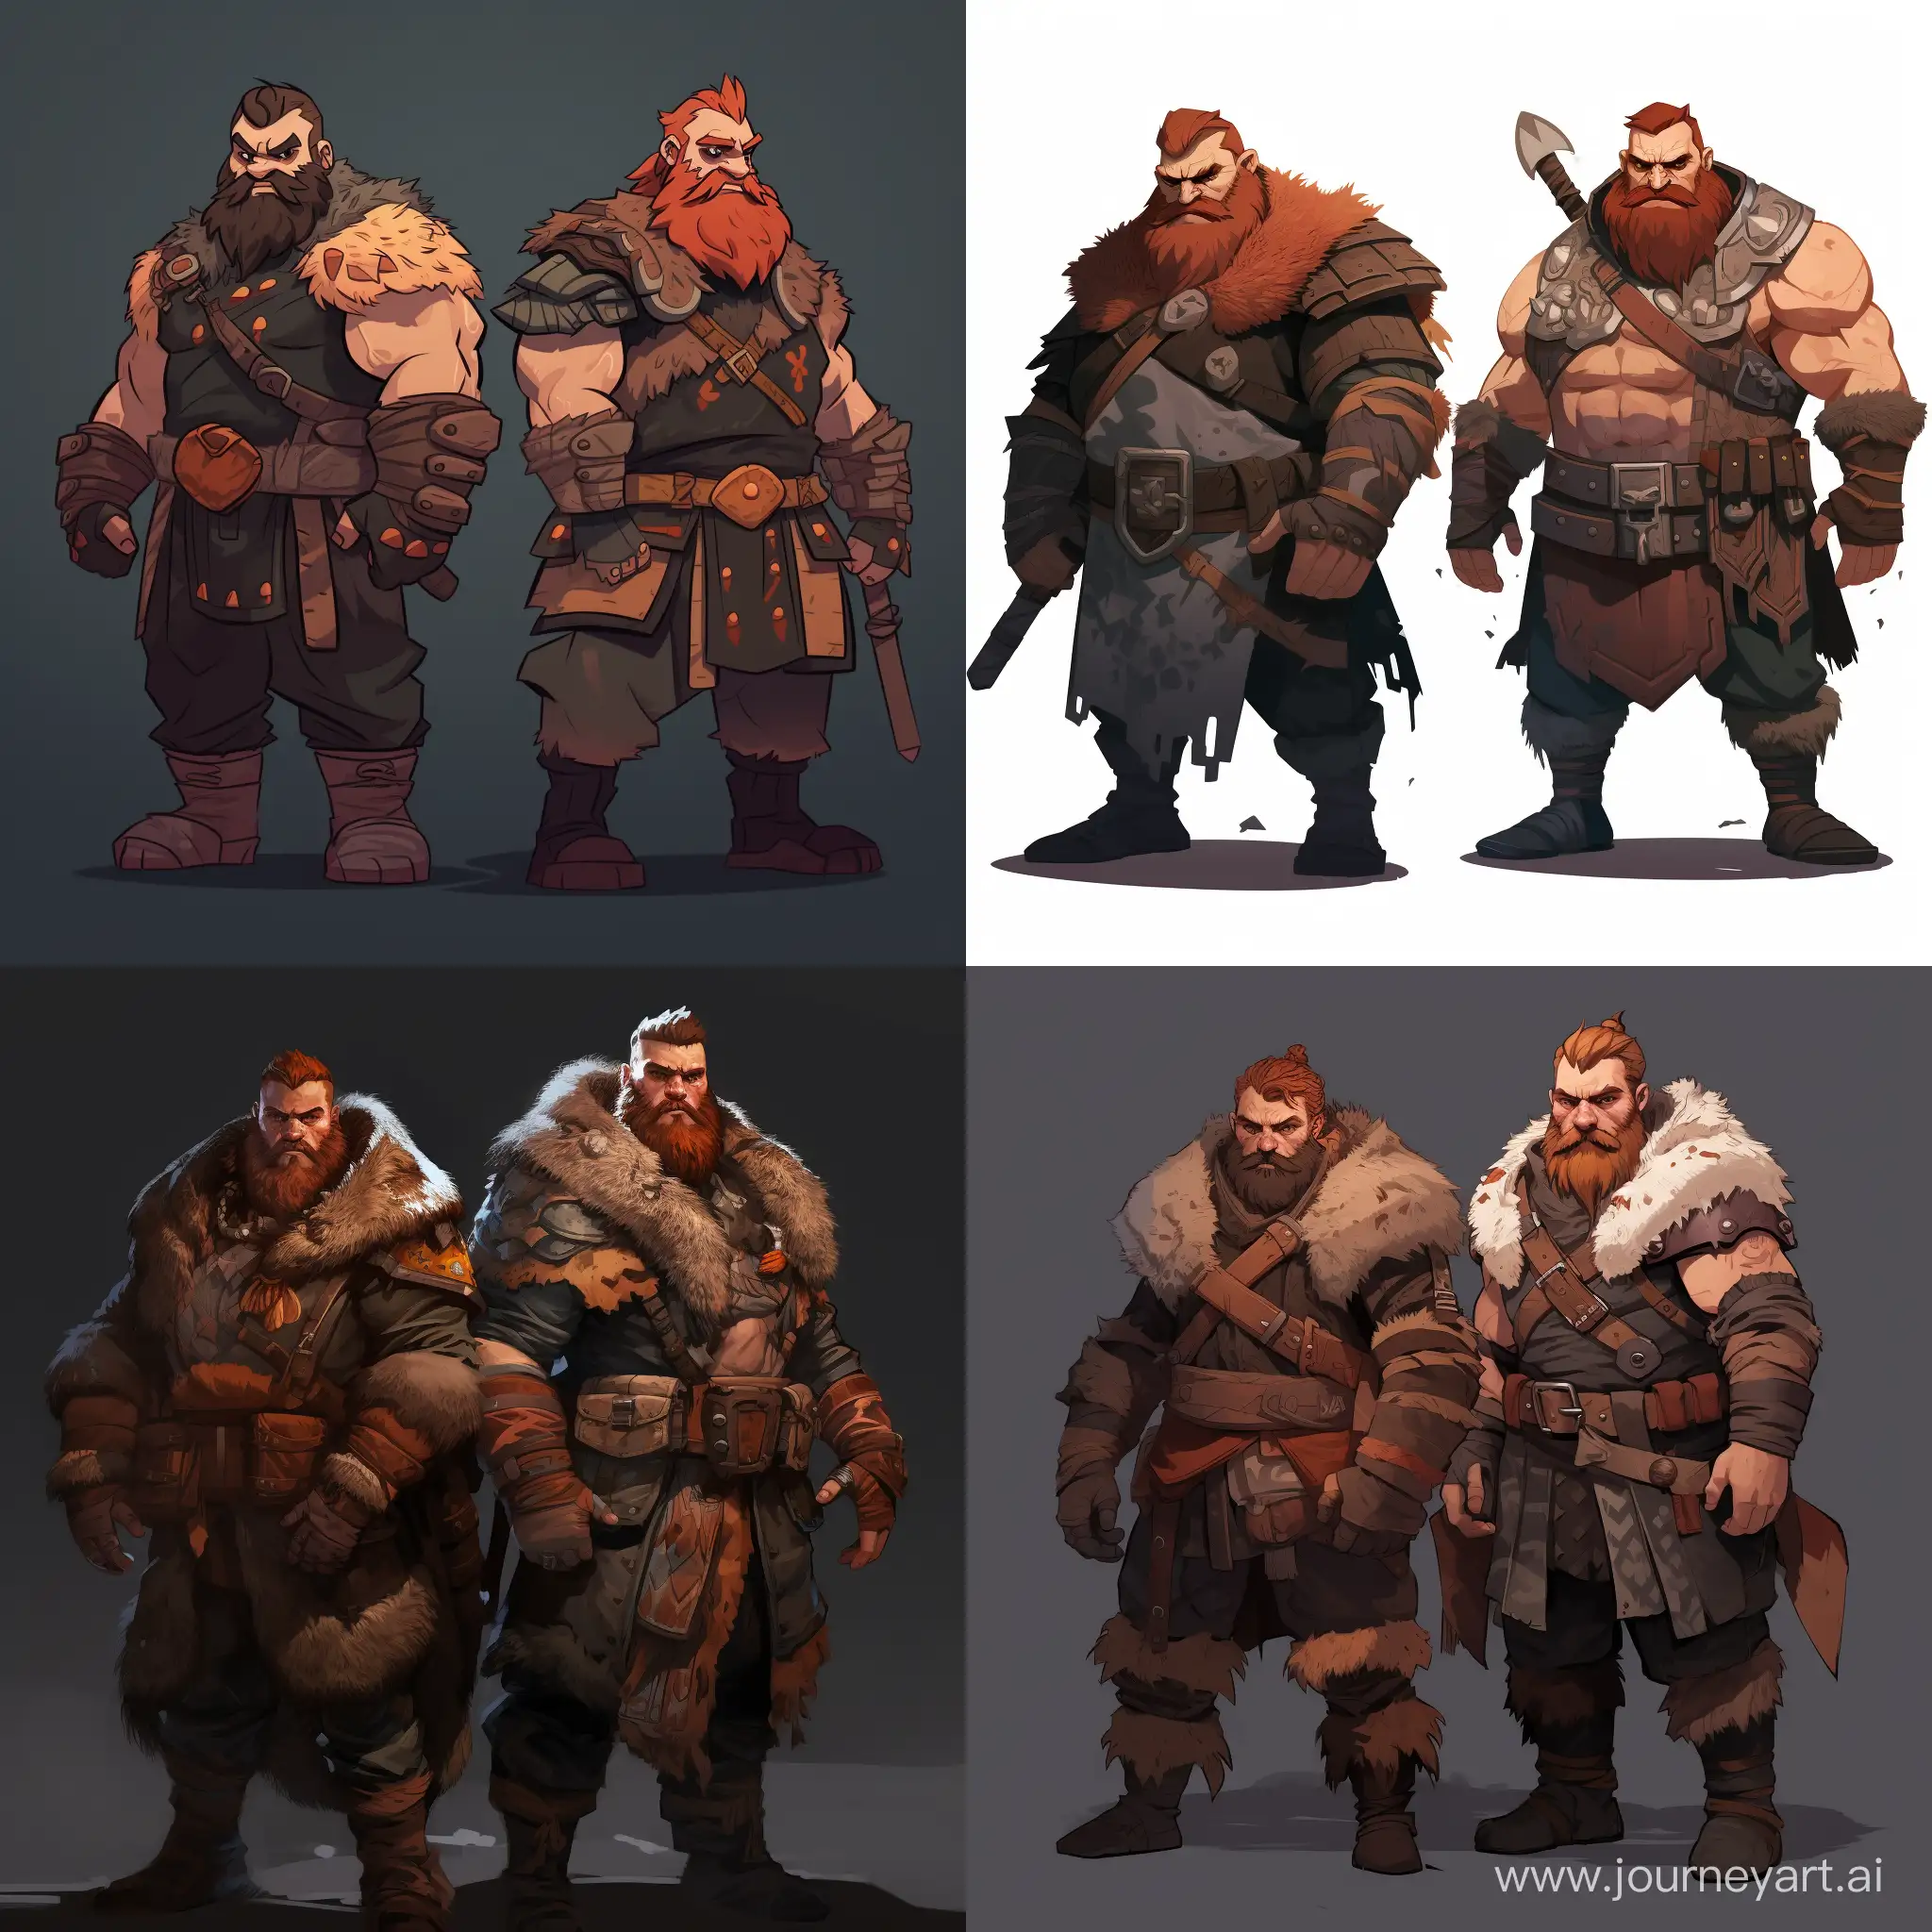 Fierce-Viking-Berserker-Brothers-in-Bear-Skin-Attire-Wielding-Axes